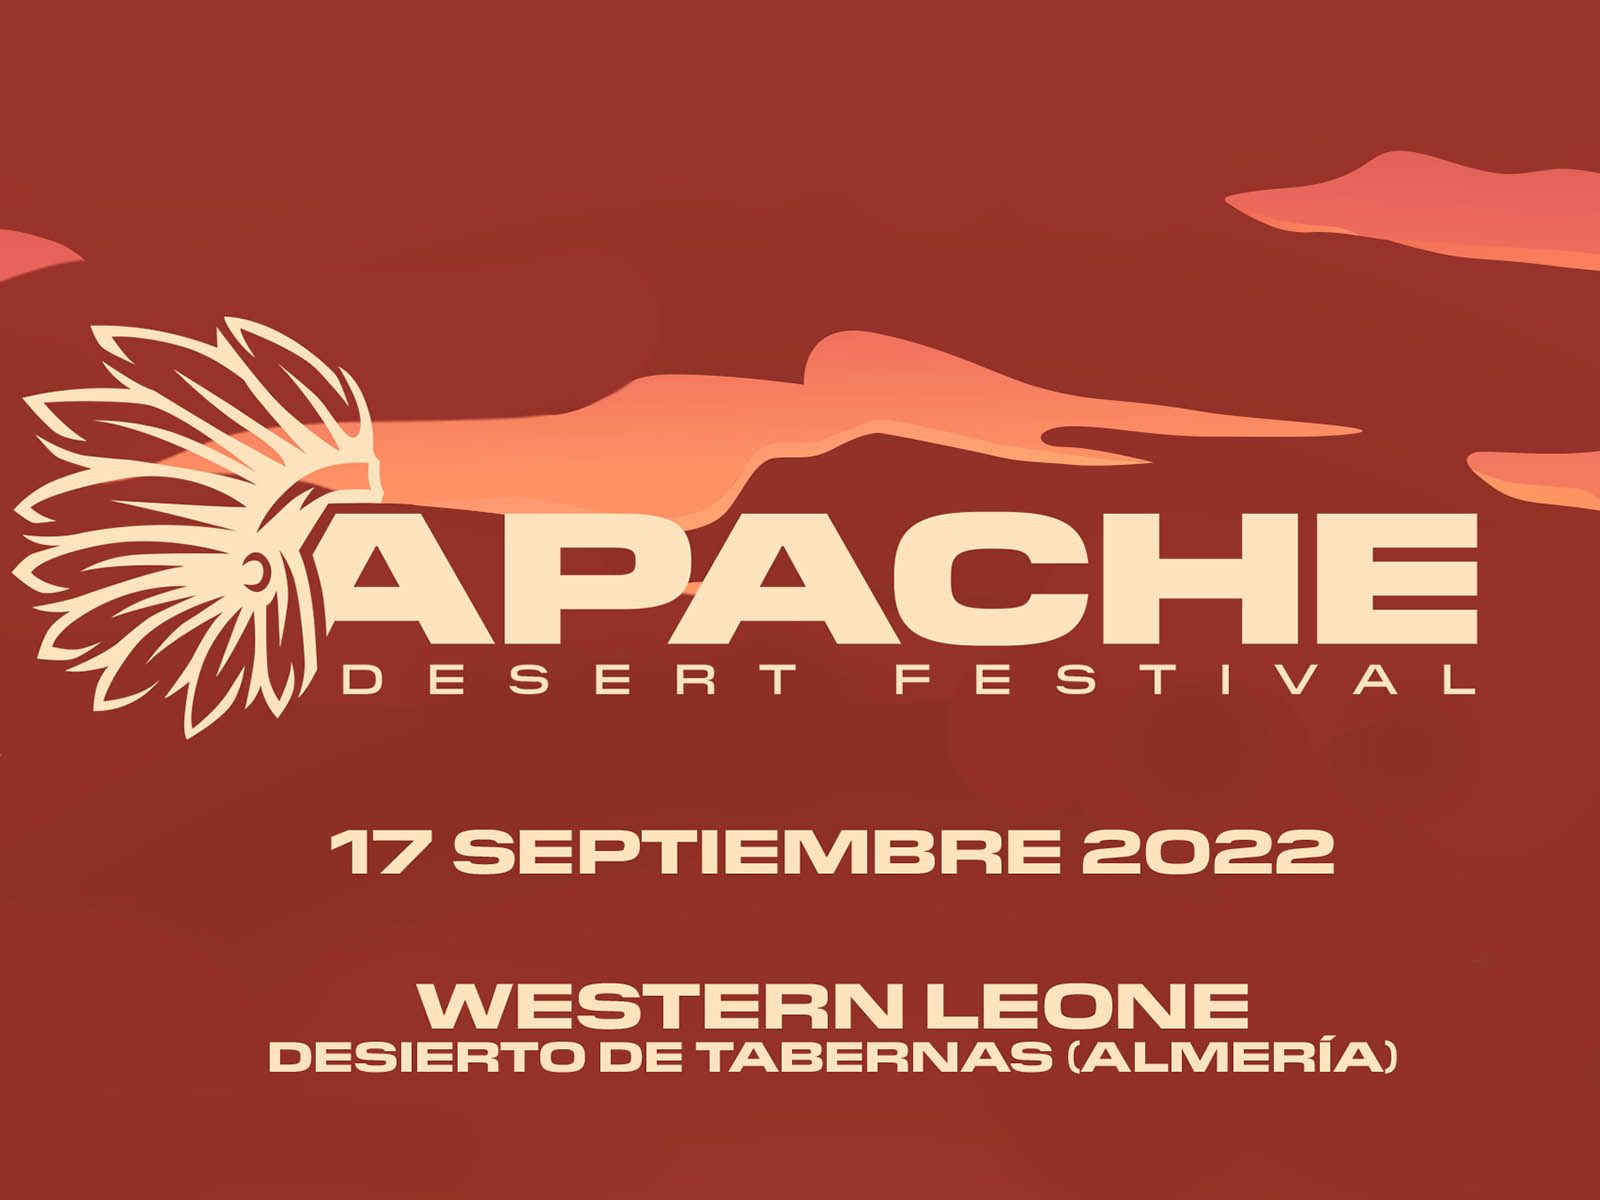 Apache Desert Festival returns to the Tabernas Desert this September